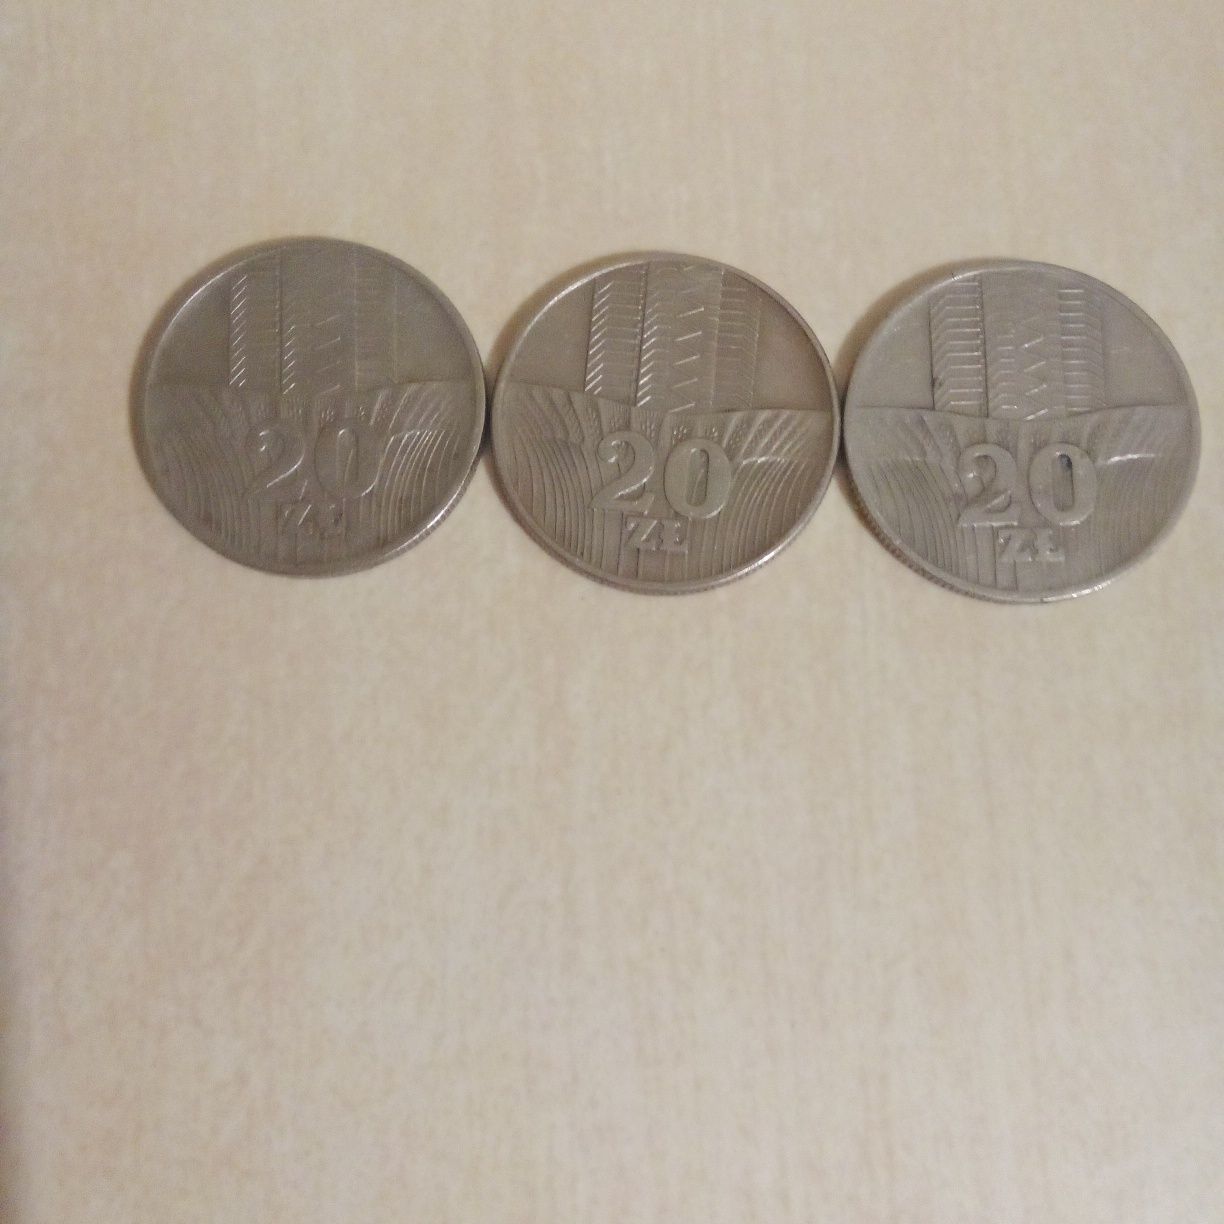 Monety 20zł z 1973r  okresu prlu